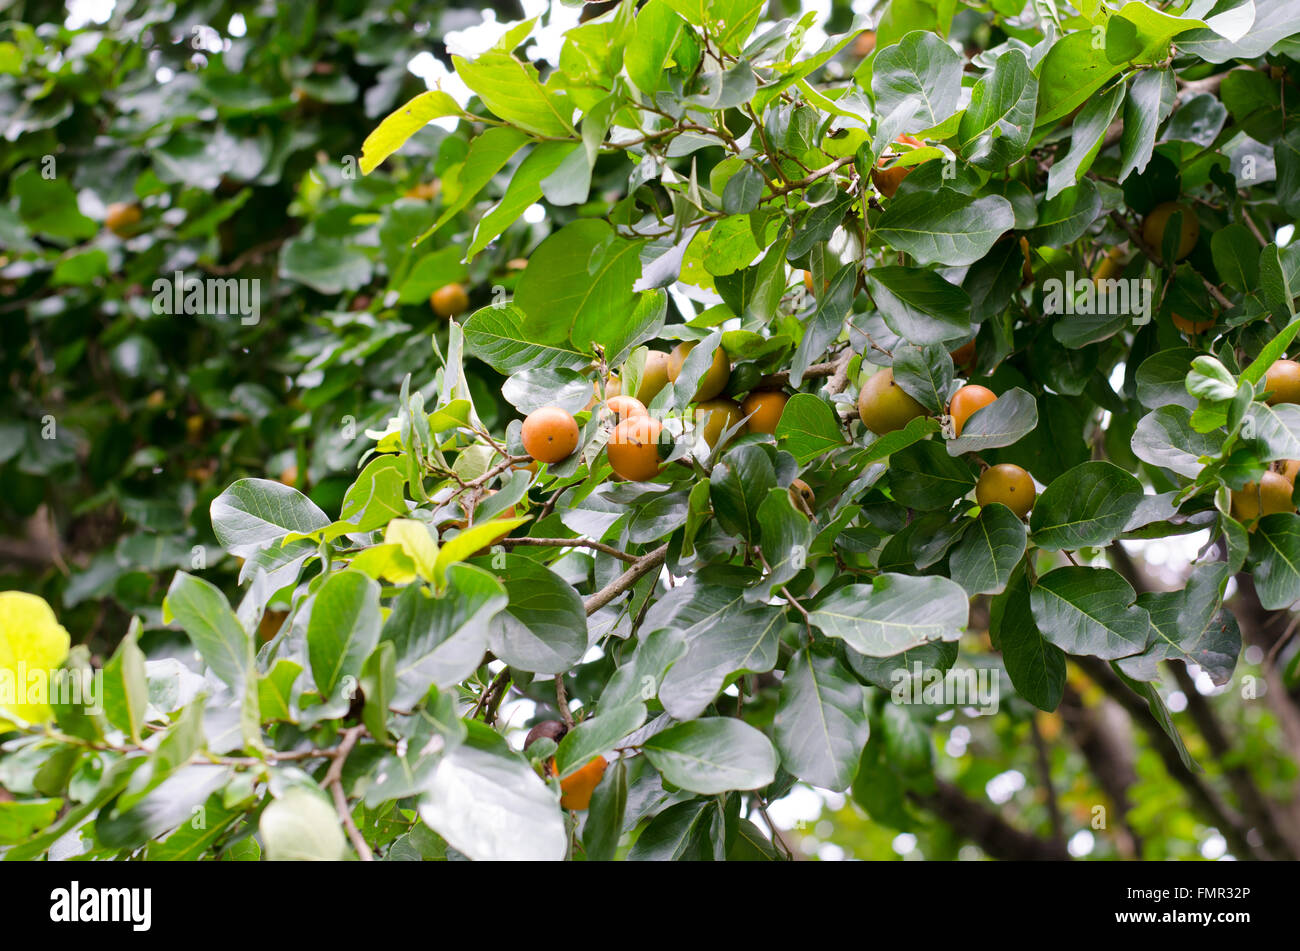 Ebony fruit growing on tree Stock Photo